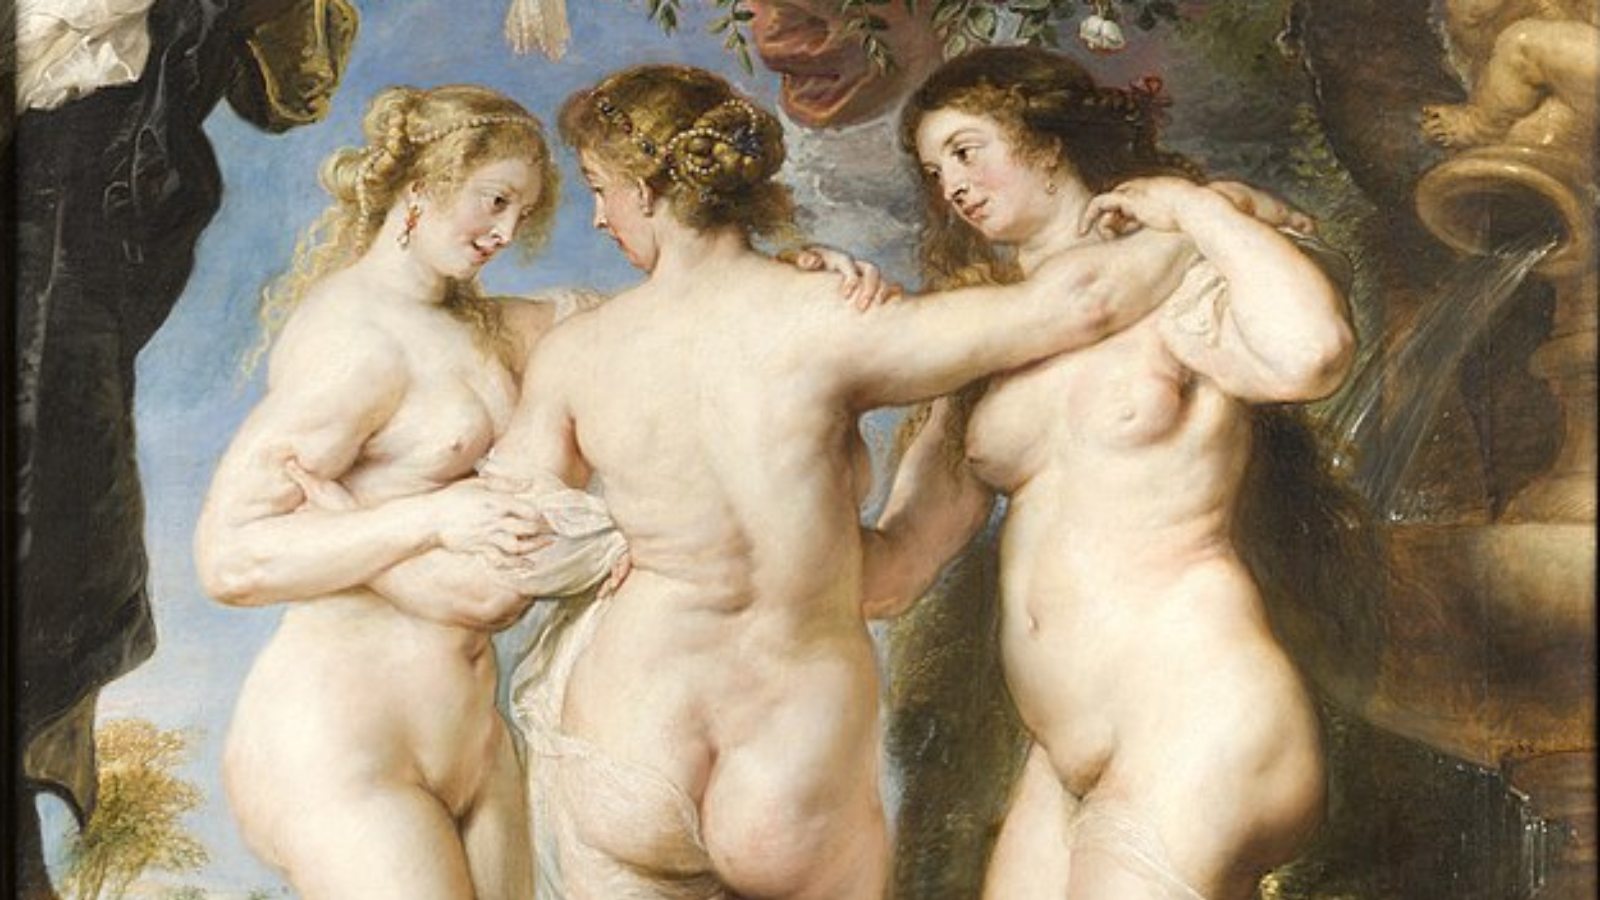 La grandeza de Rubens, una oda al maestro flamenco